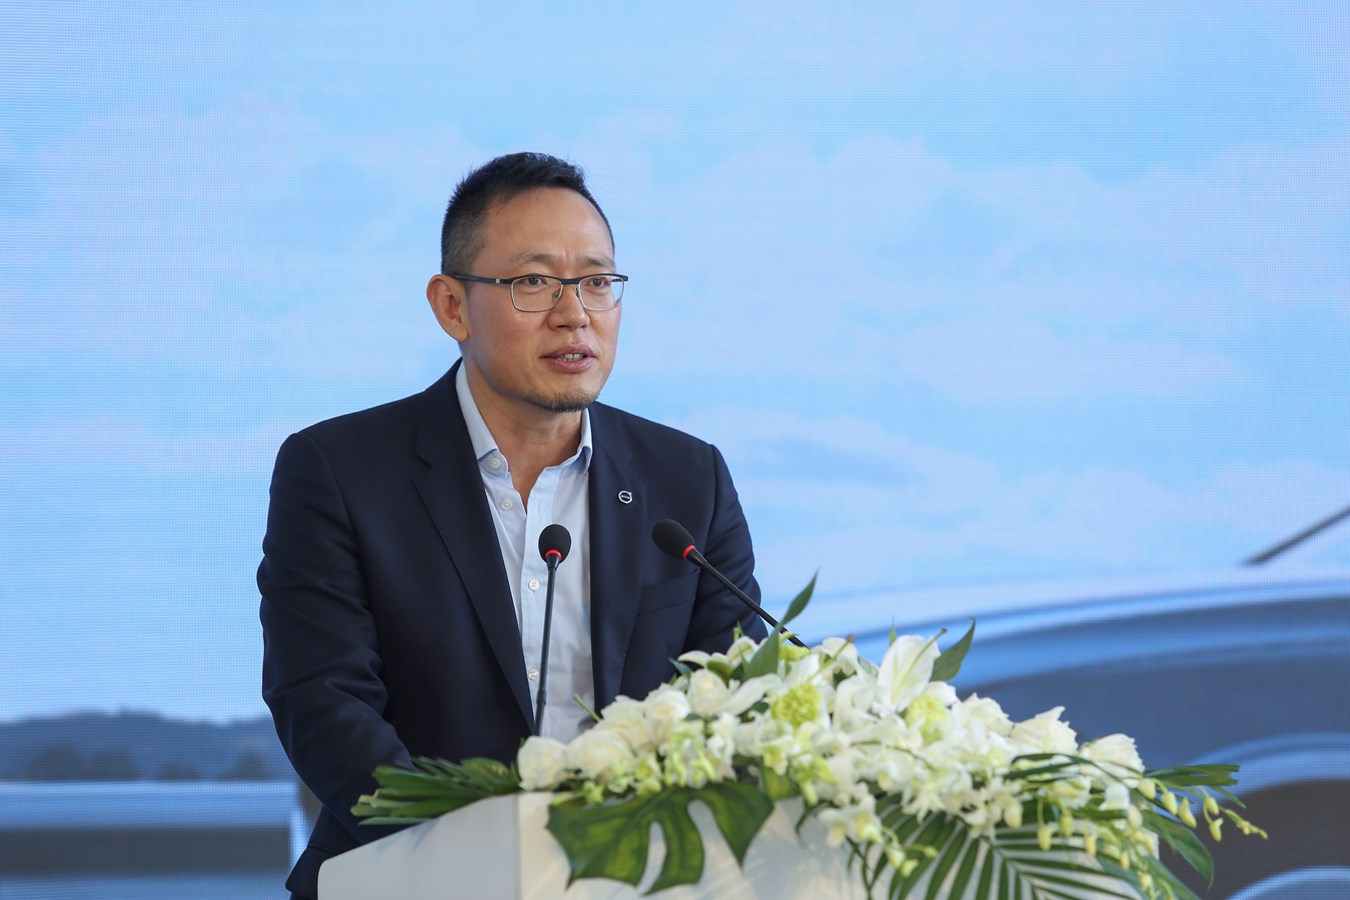 沃尔沃汽车集团全球高级副总裁，亚太区总裁兼CEO 袁小林先生致辞